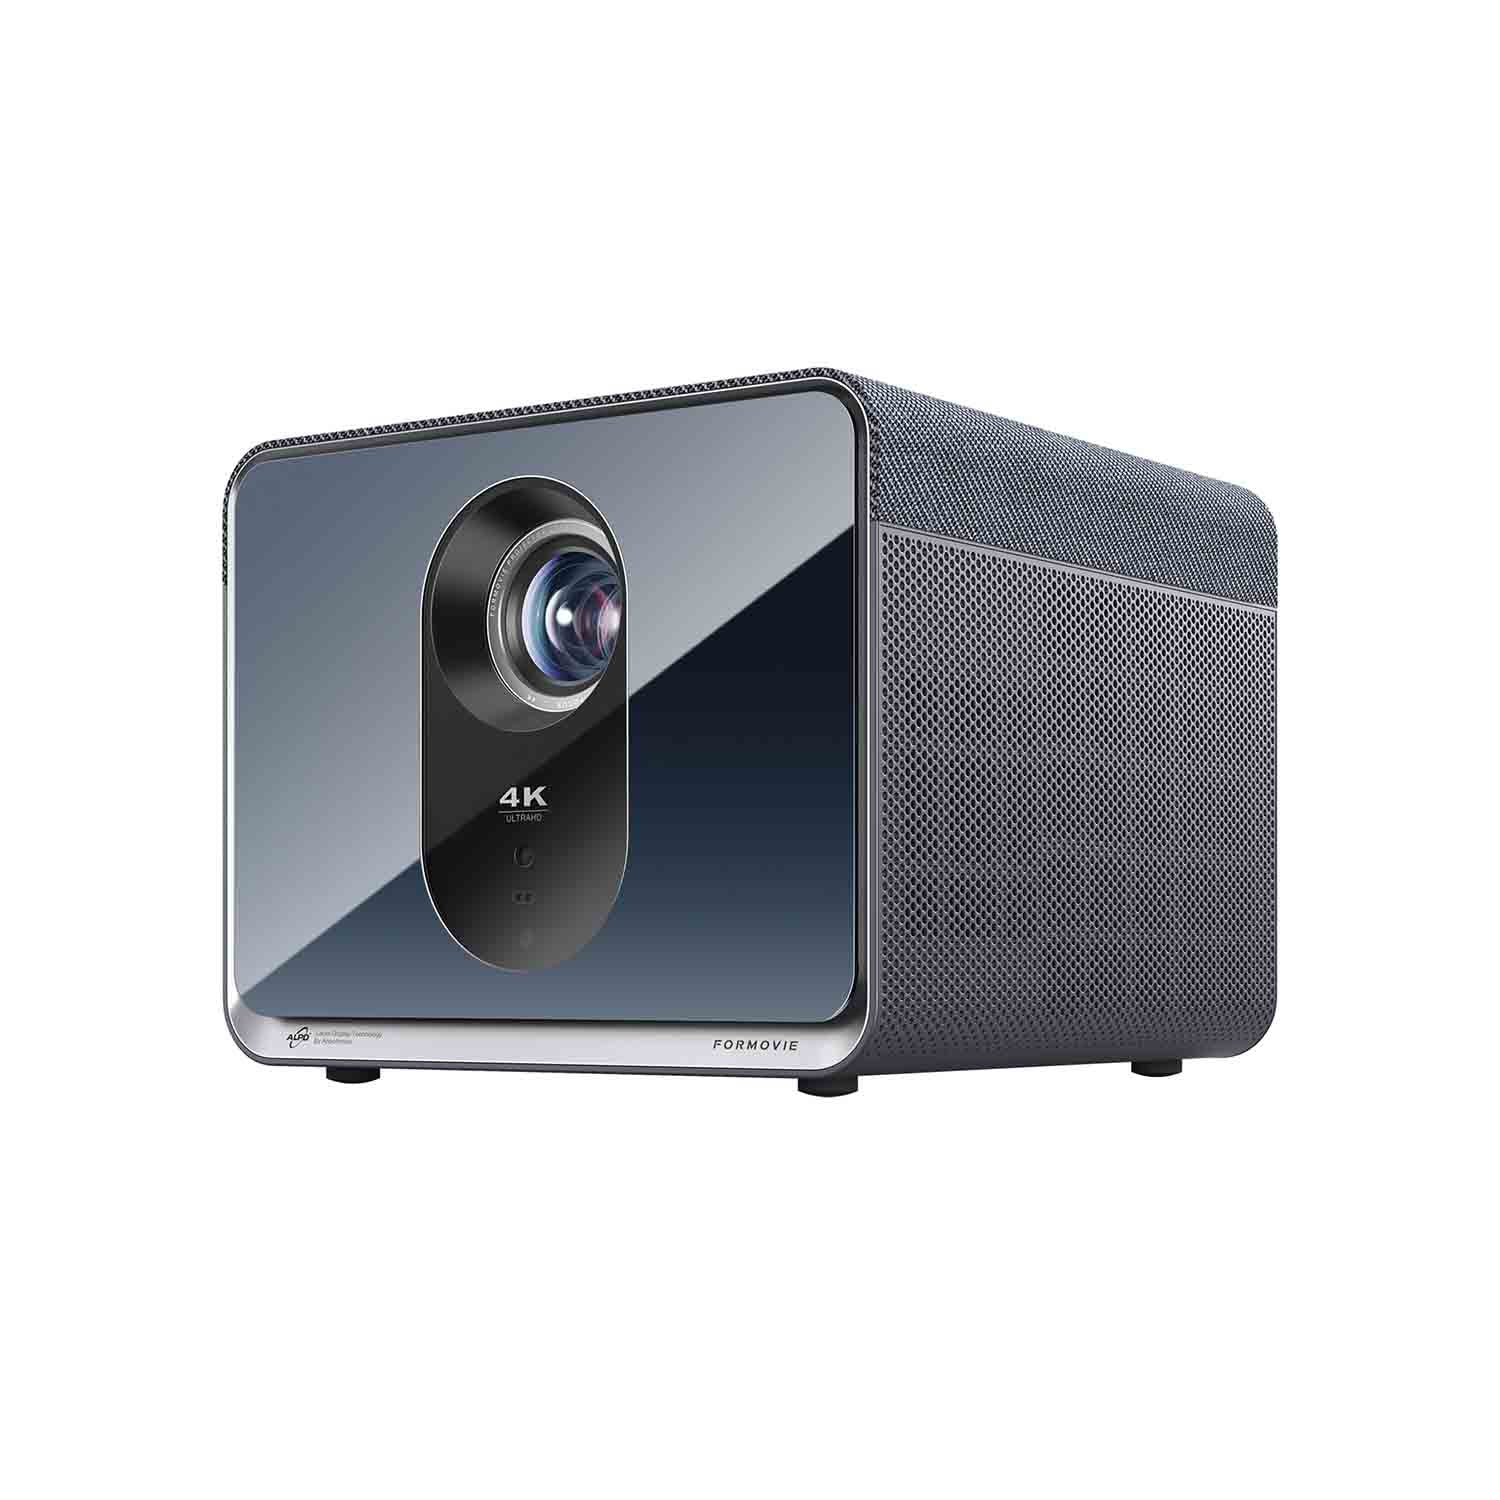 Formovie X5 Truly Cinema Grade 4K Laser Projector 2450 CVIA Lumens ALPD Portable Projector with Denon speaker